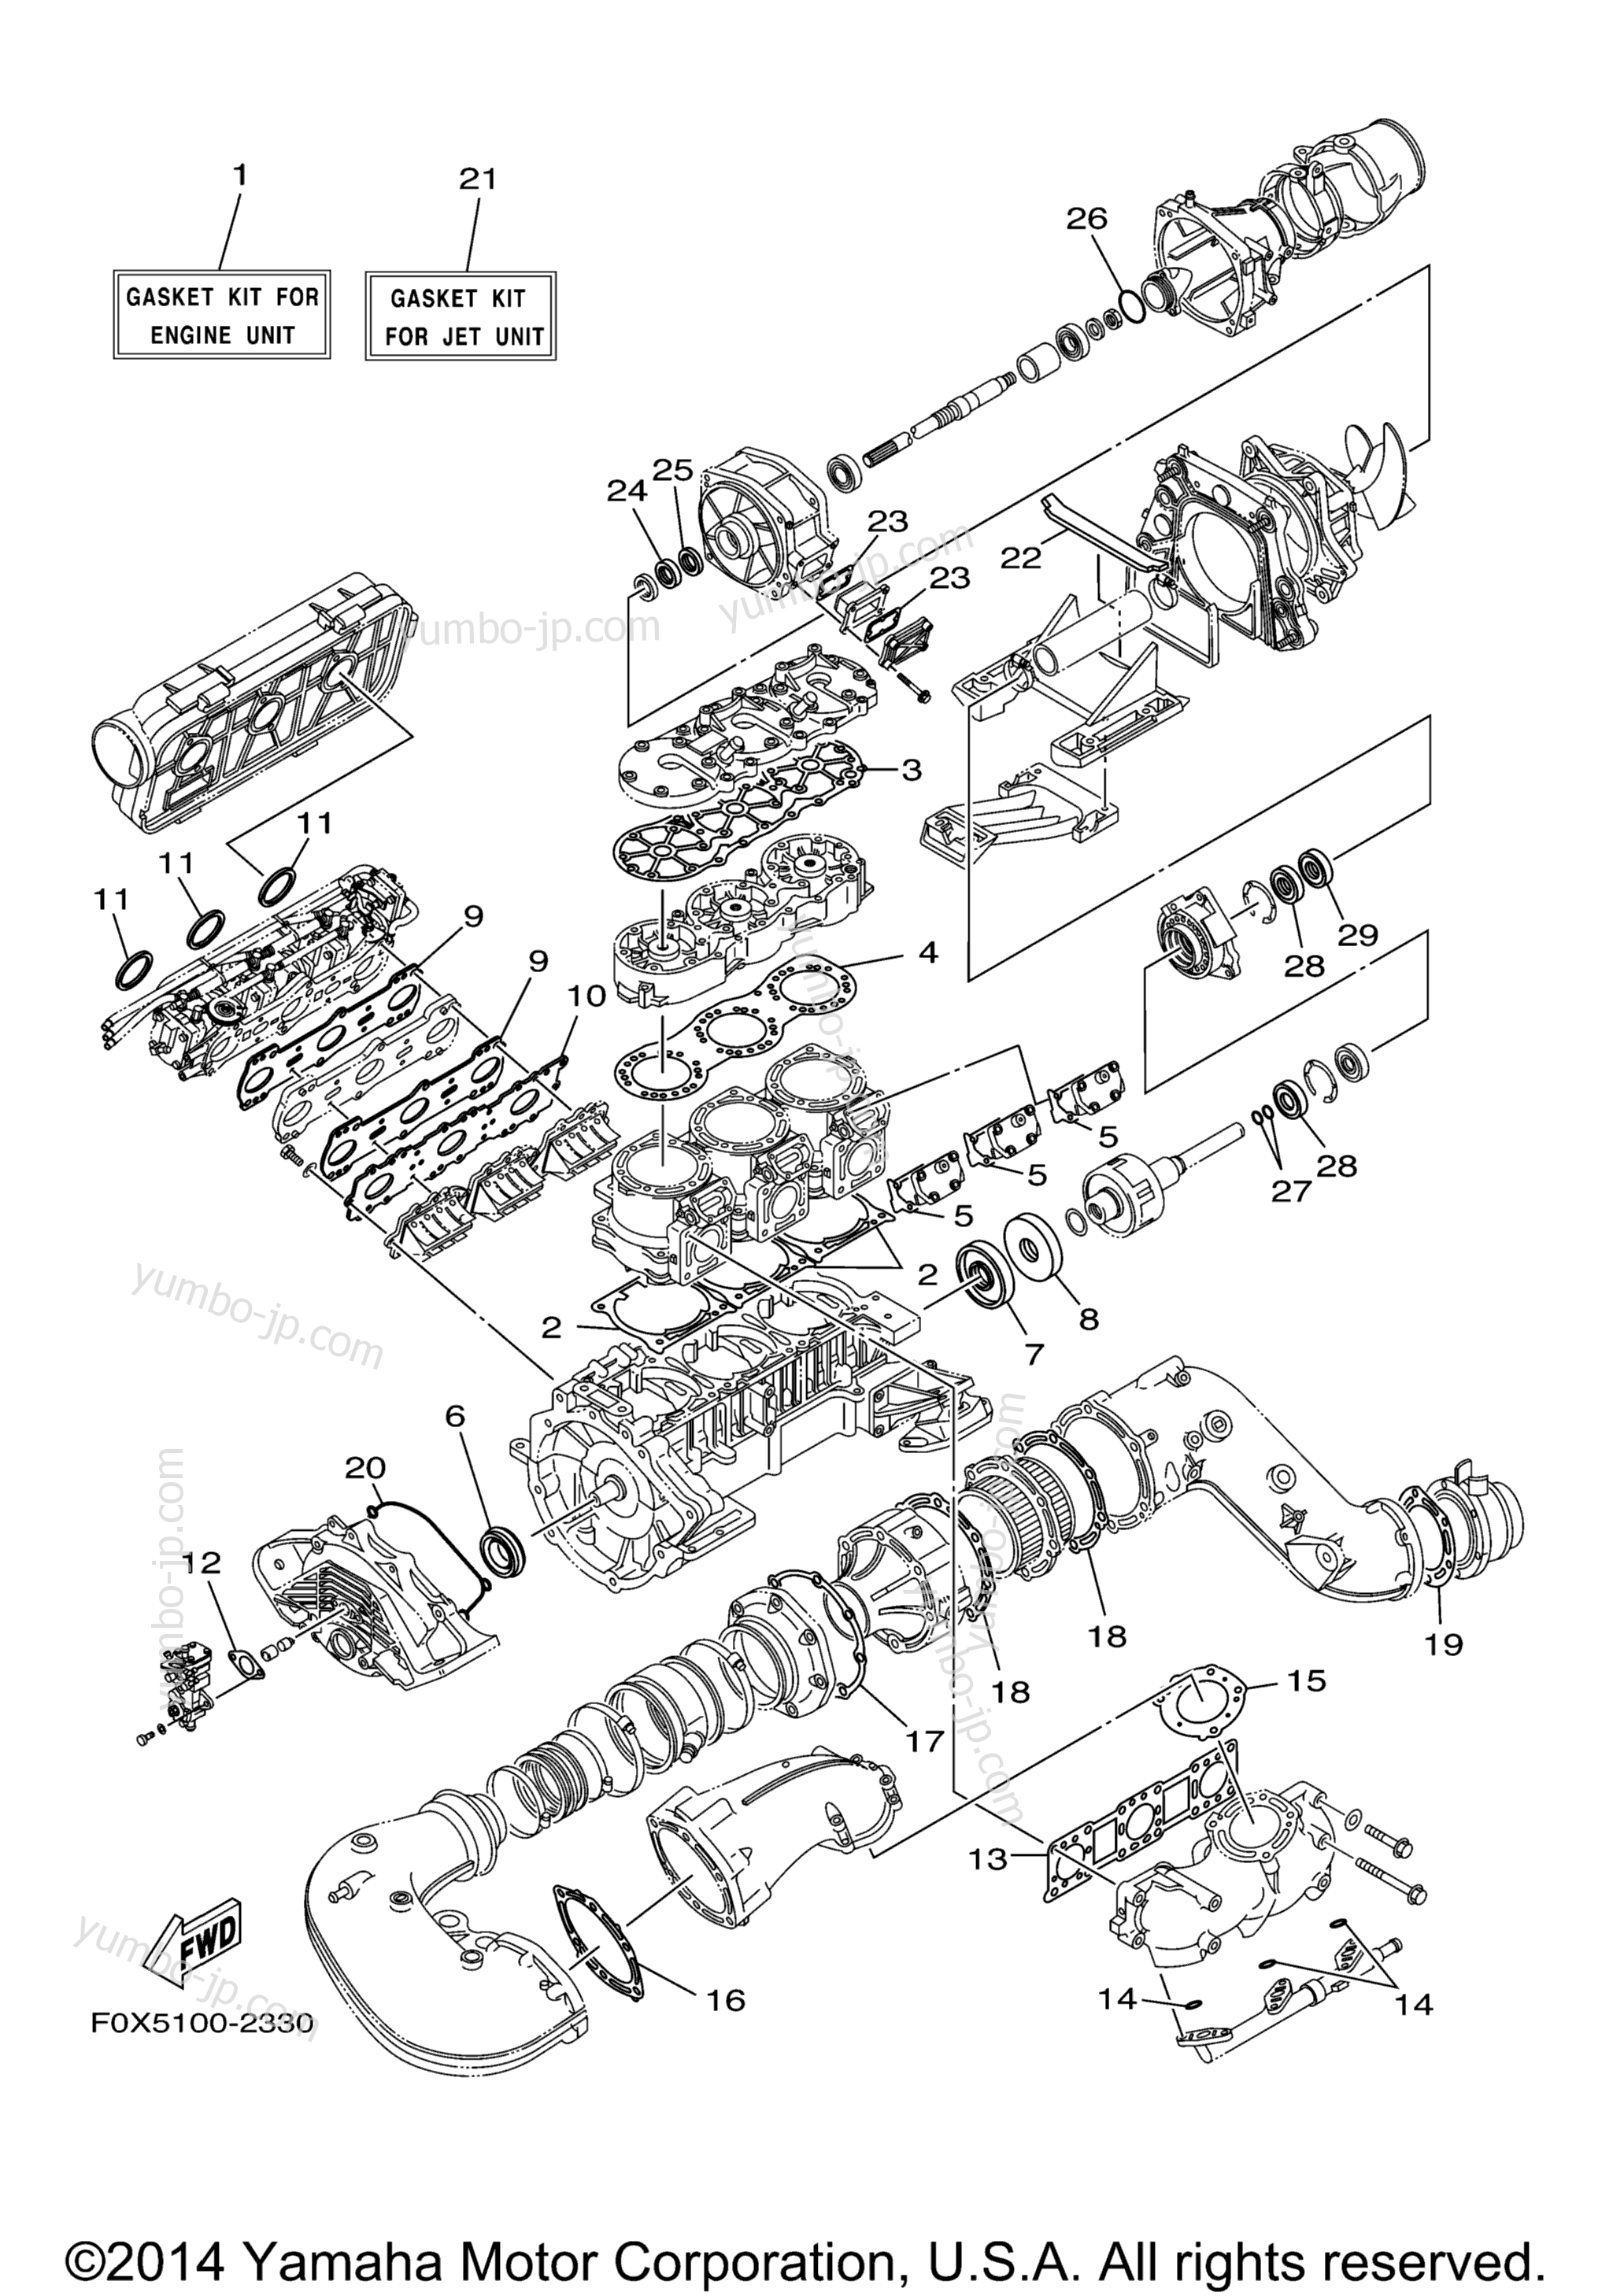 Repair Kit 1 для гидроциклов YAMAHA GP1200 (GP1200AA) 2002 г.